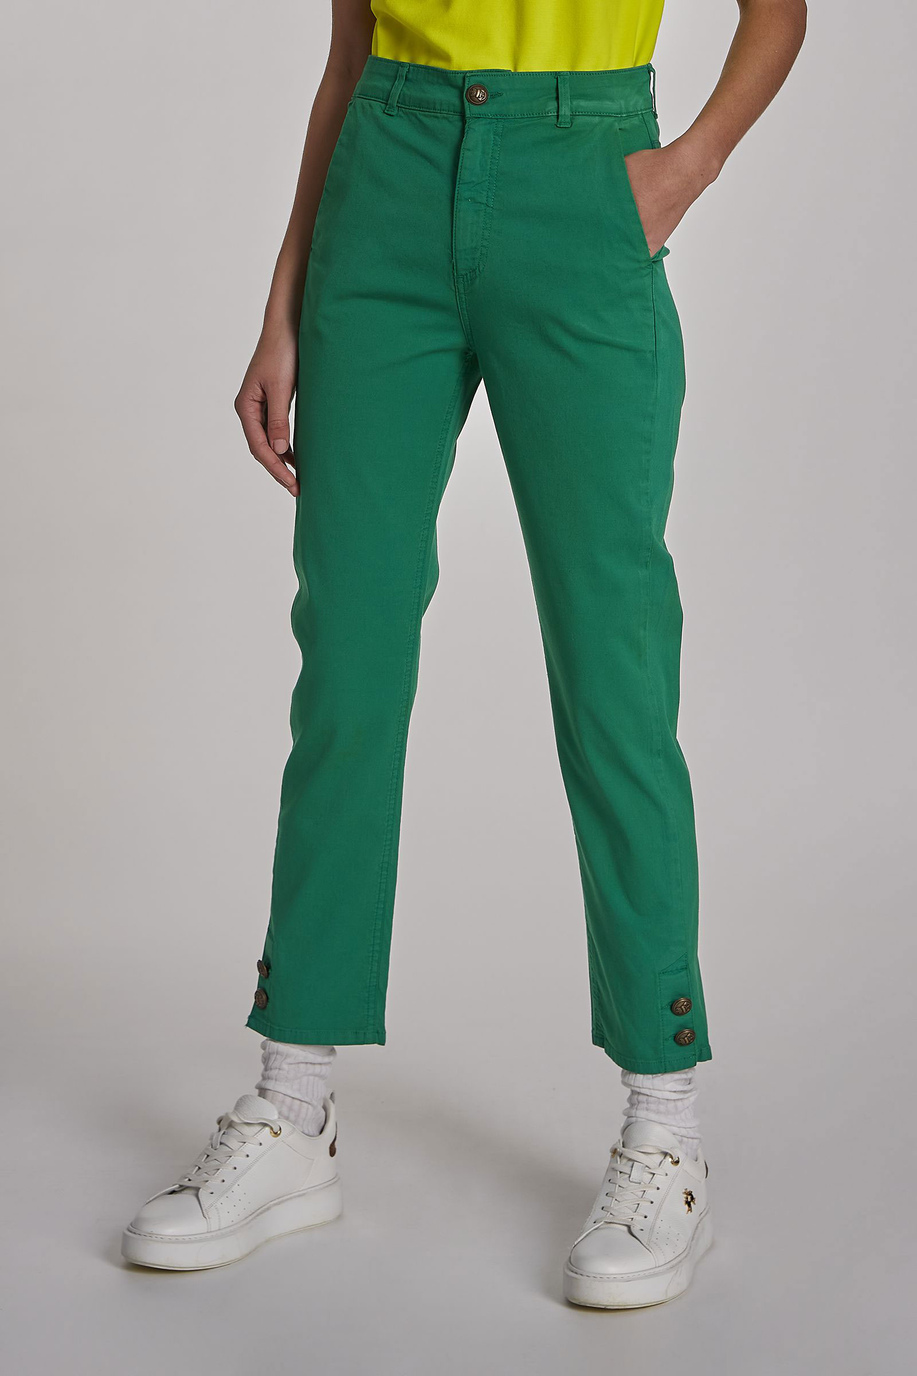 Pantalone da donna modello 5 tasche in cotone regular fit - Pantaloni | La Martina - Official Online Shop